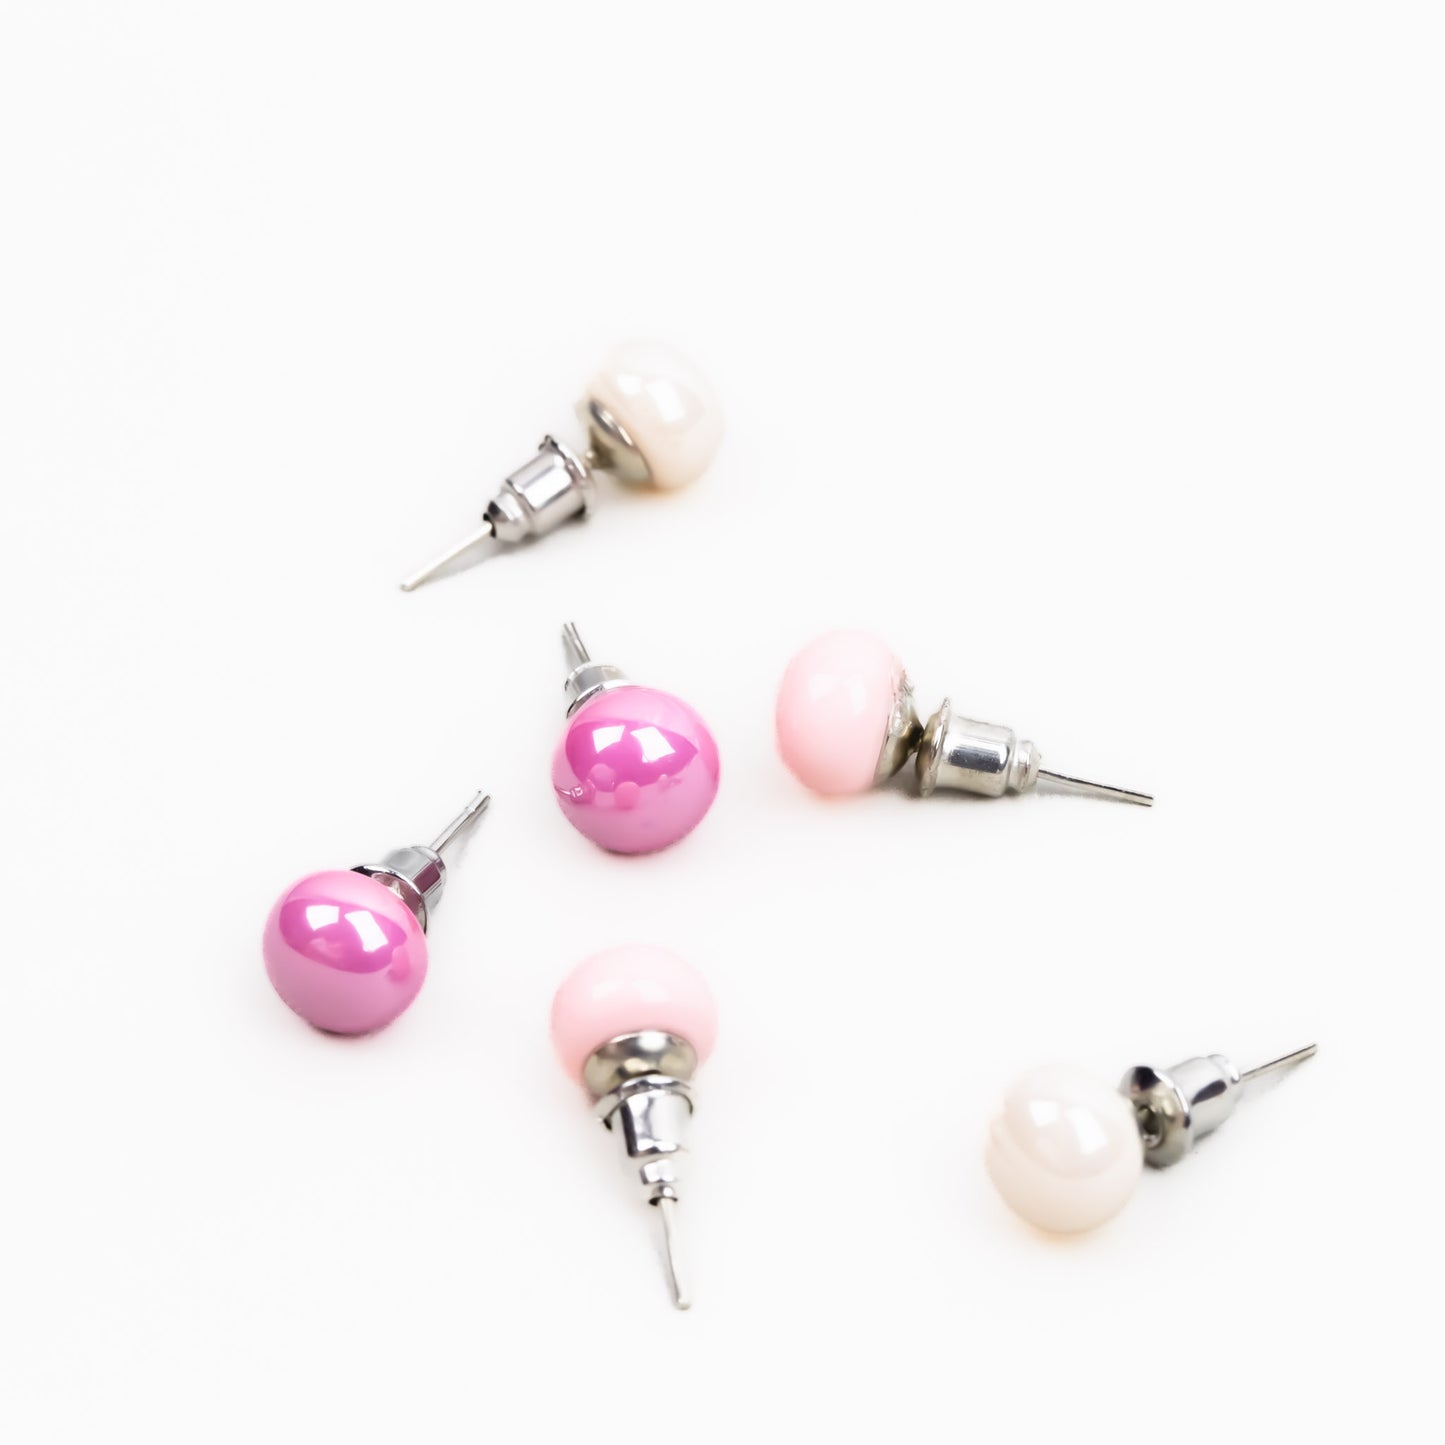 Set cercei mici cu perle colorate în nuanțe, 3 perechi - Sweet Mix